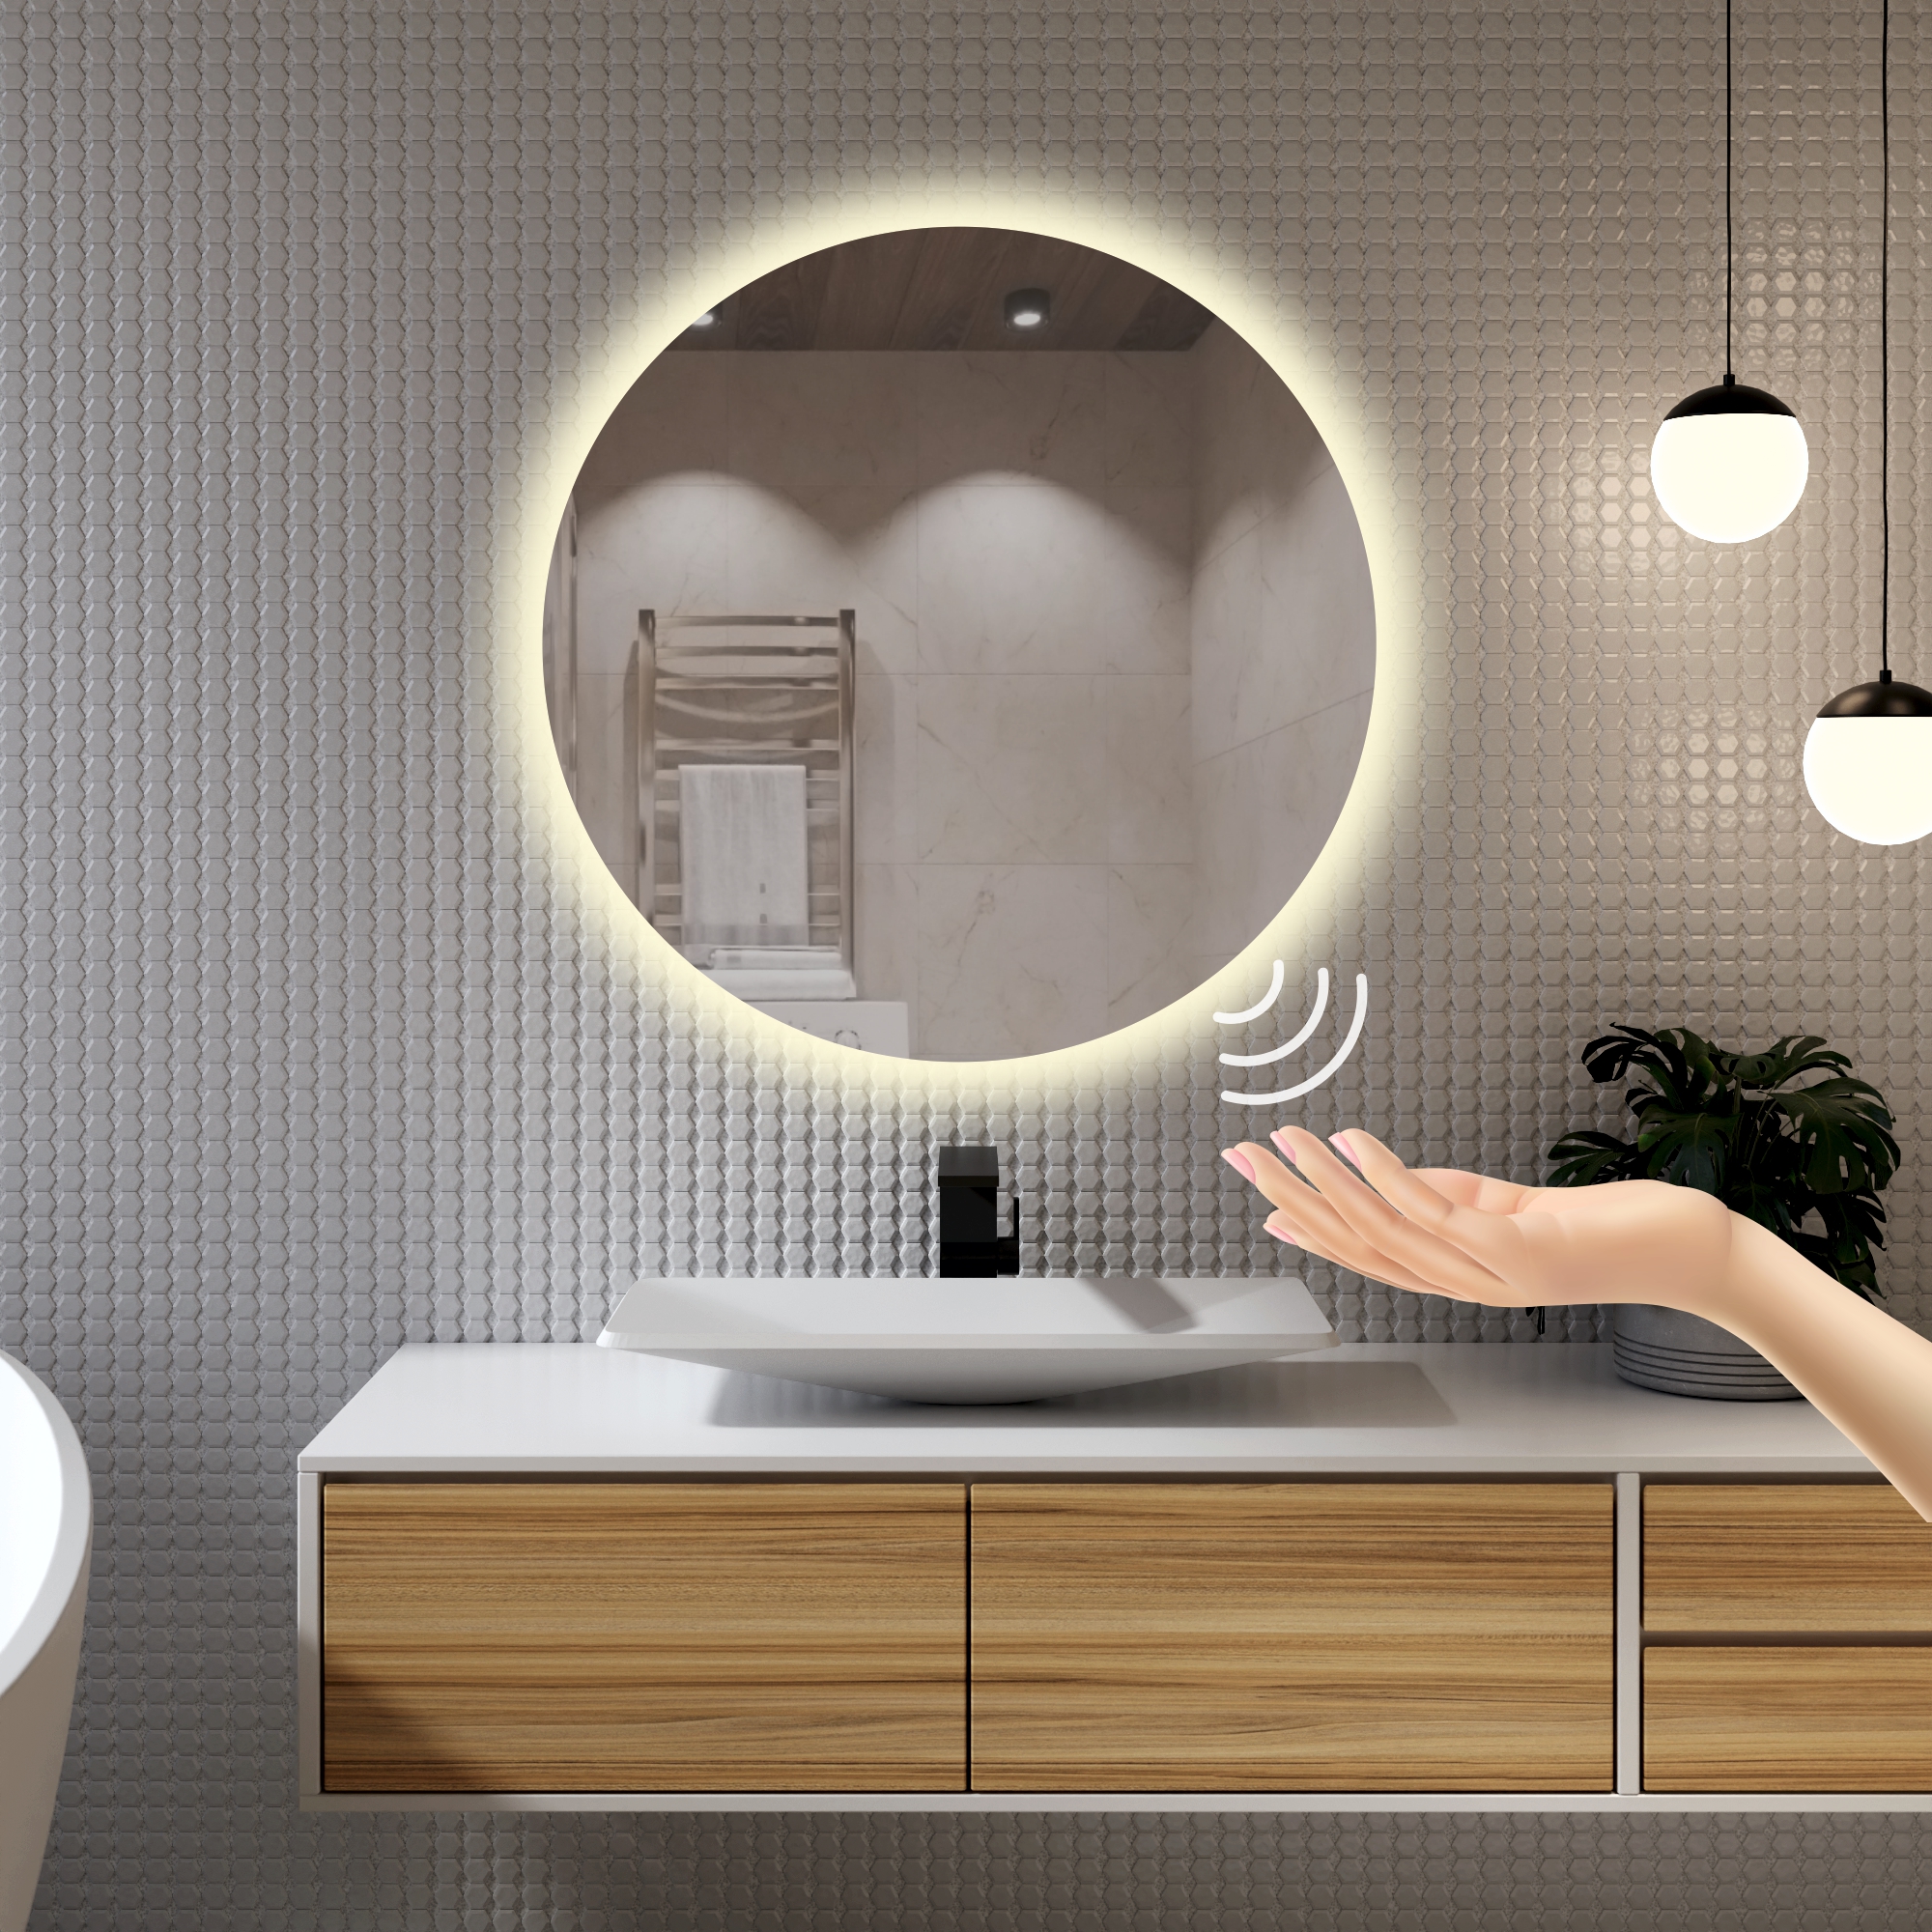 Зеркало для ванной Alfa Mirrors с дневной подсветкой 4200К круглое 60см, арт. Na-6Vzd круглое зеркало мертвой зоны главдор